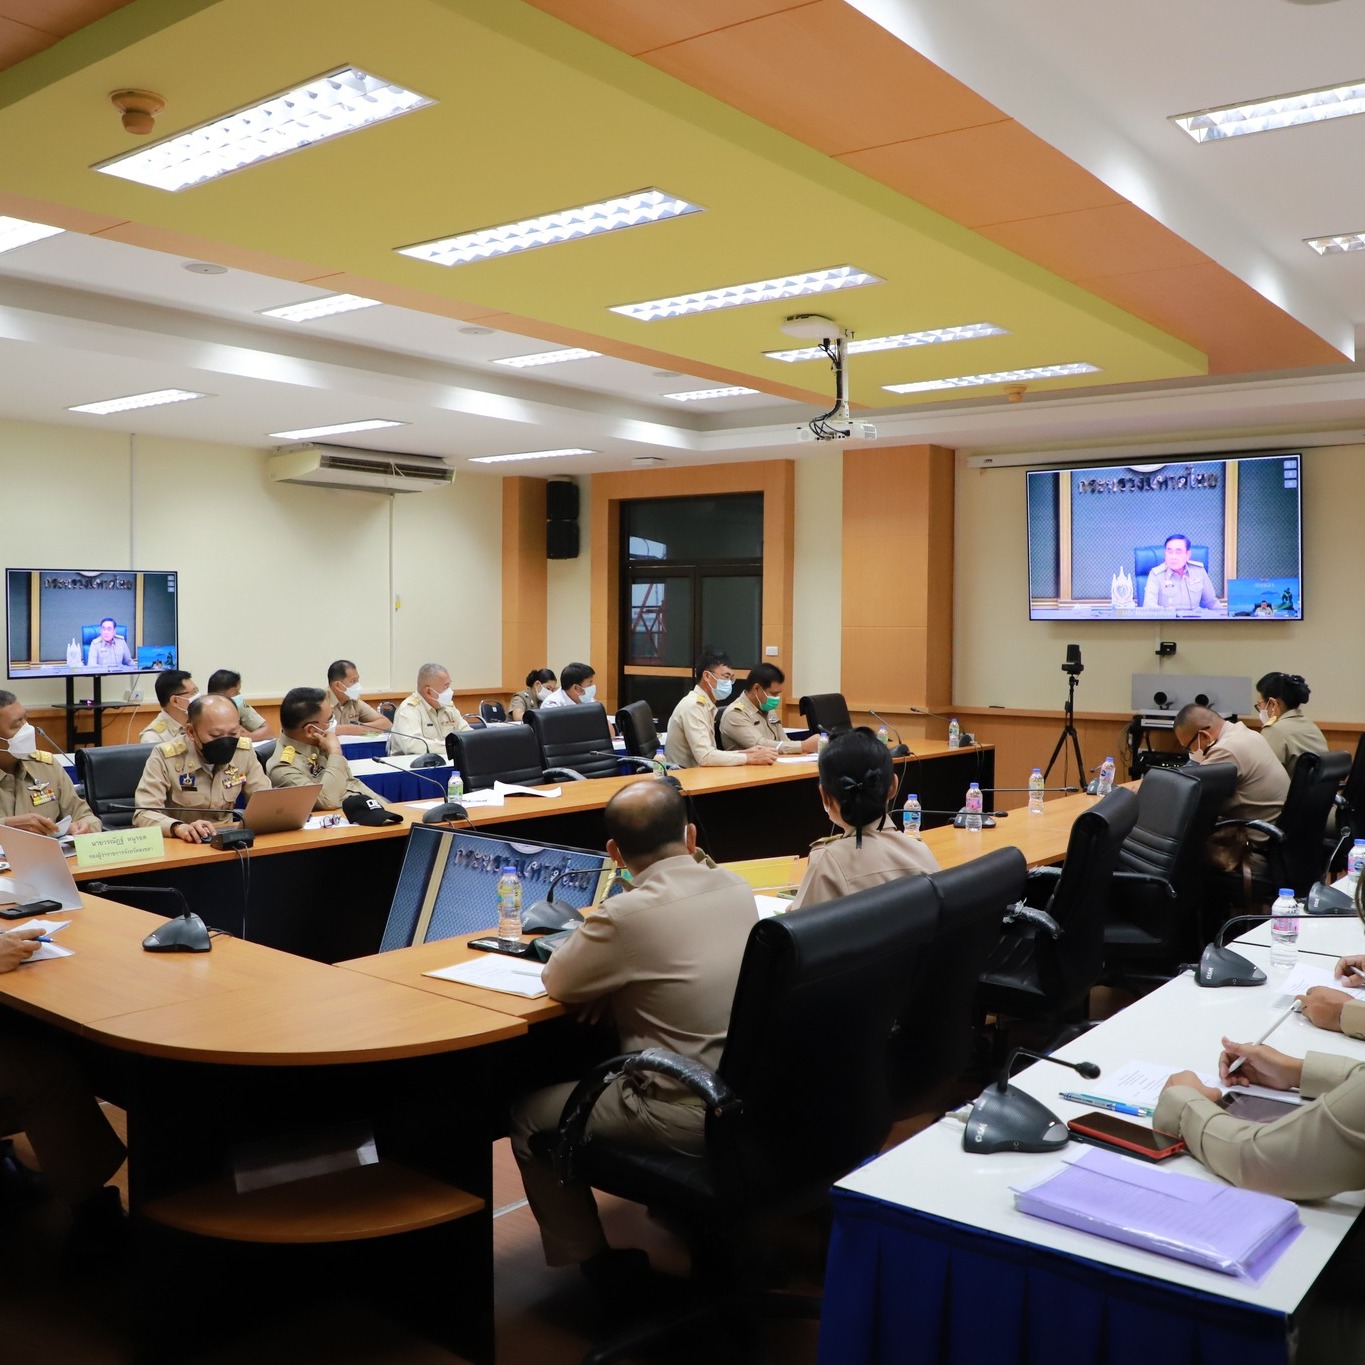 ศอ.ร่วมประชุมการบริหารจัดการสถานการณ์อุทกภัย และการให้ความช่วยเหลือ ผ่านระบบ VDO Conference